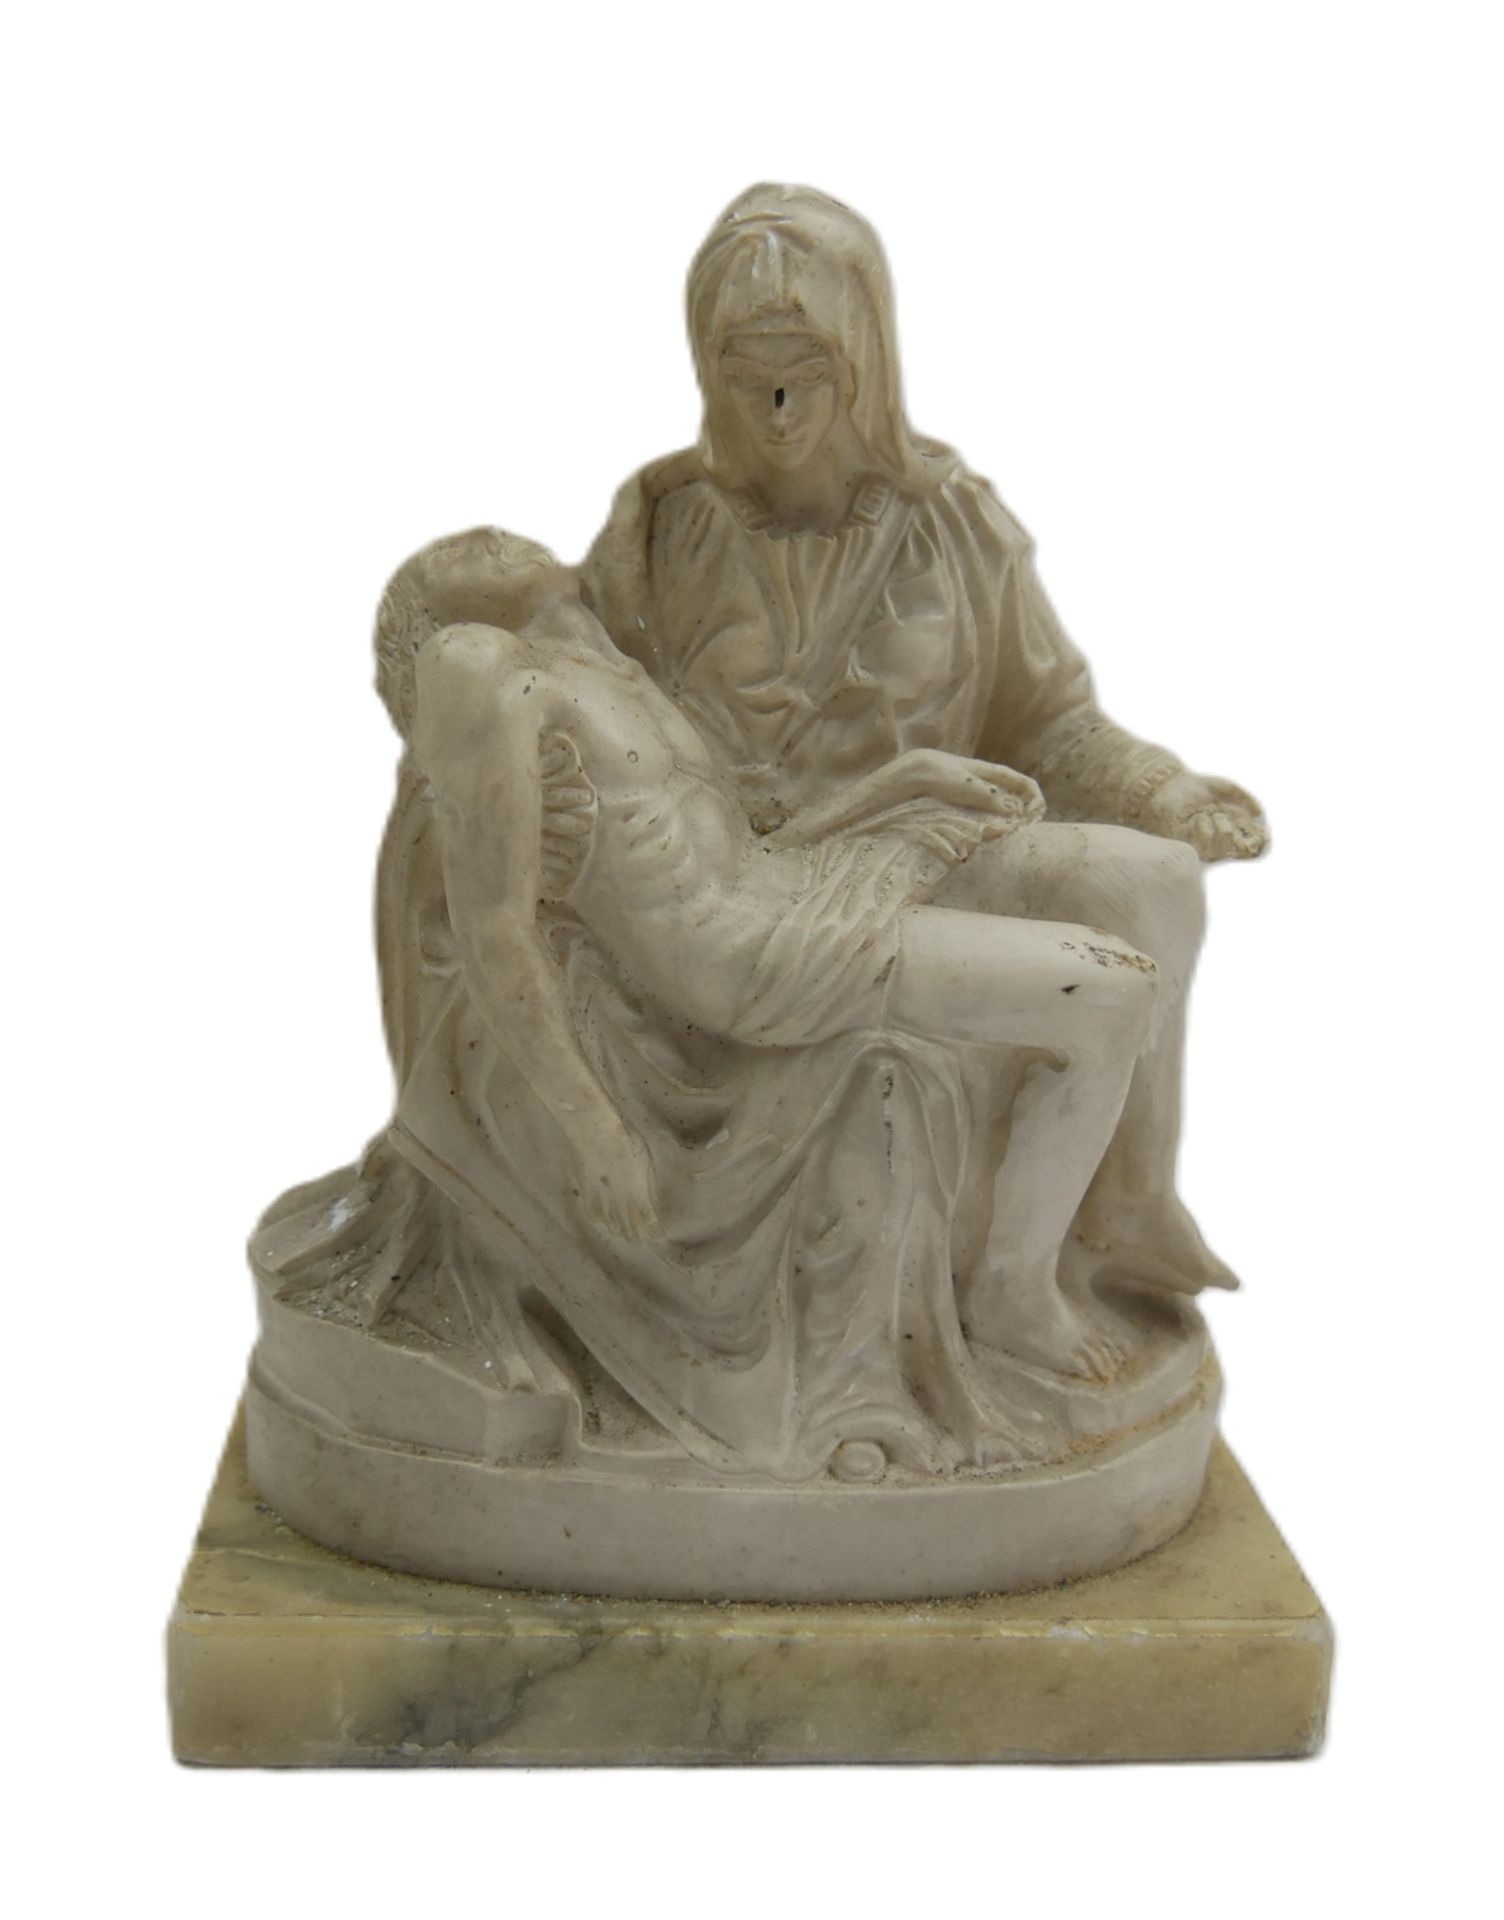 Römische/vatikanische Pietá nach Michelangelo, auf Marmorsockel. Maße inkl. Sockel: Höhe ca. 16,5